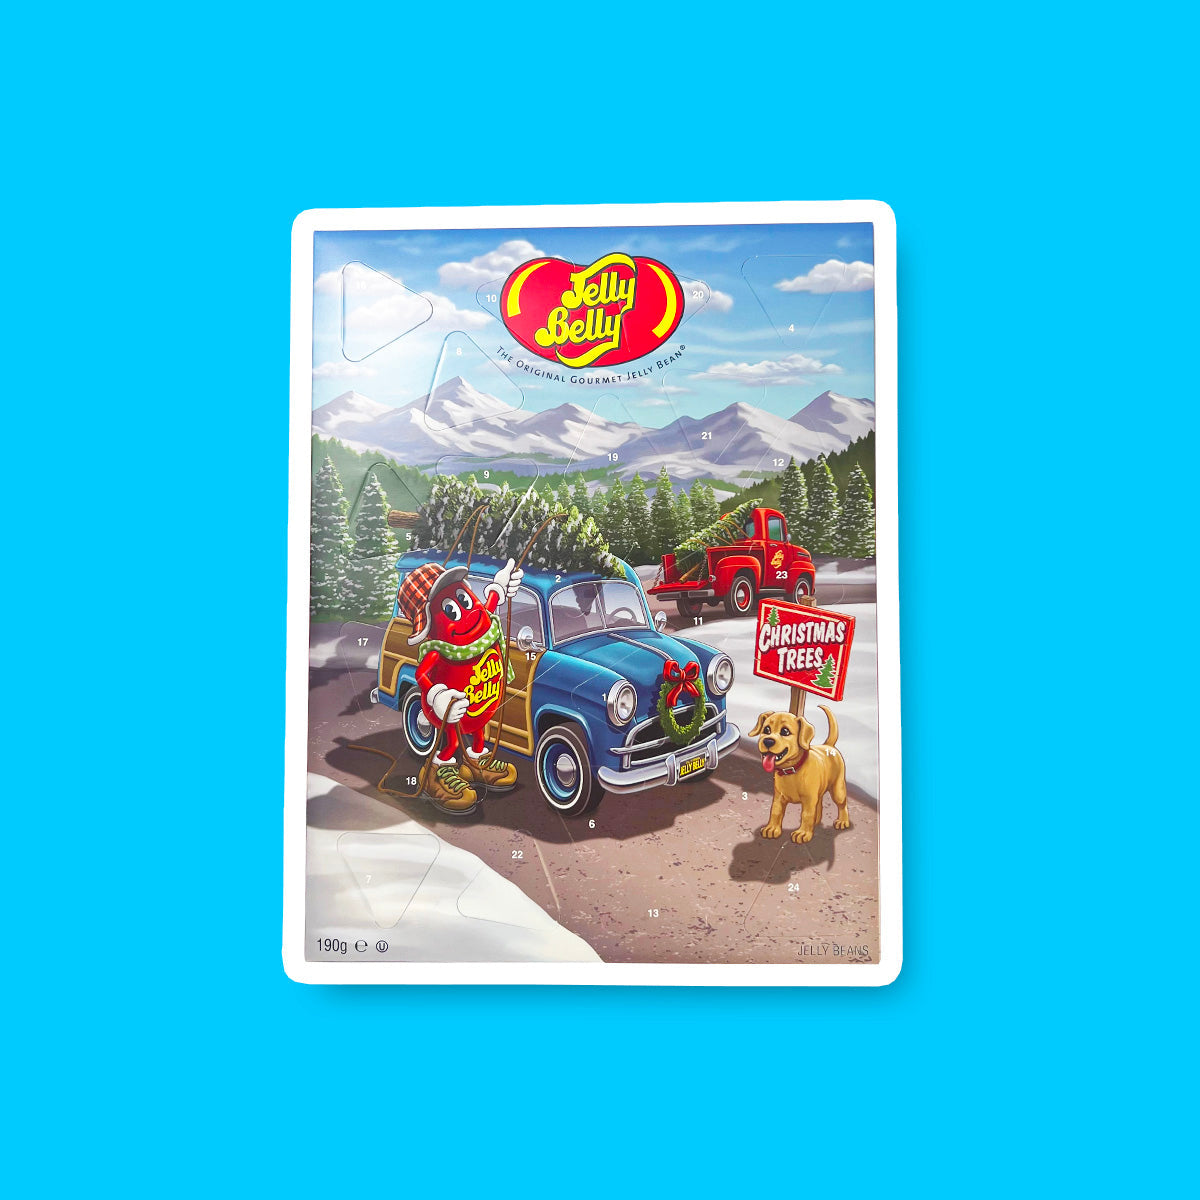 Un carton sur fond bleu avec une voiture bleue autour d’un paysage montagneux et enneigé avec plein de sapin. Sur le devant, un chien et un Jelly Belly rouge qui attache un sapin sur le toit de sa voiture